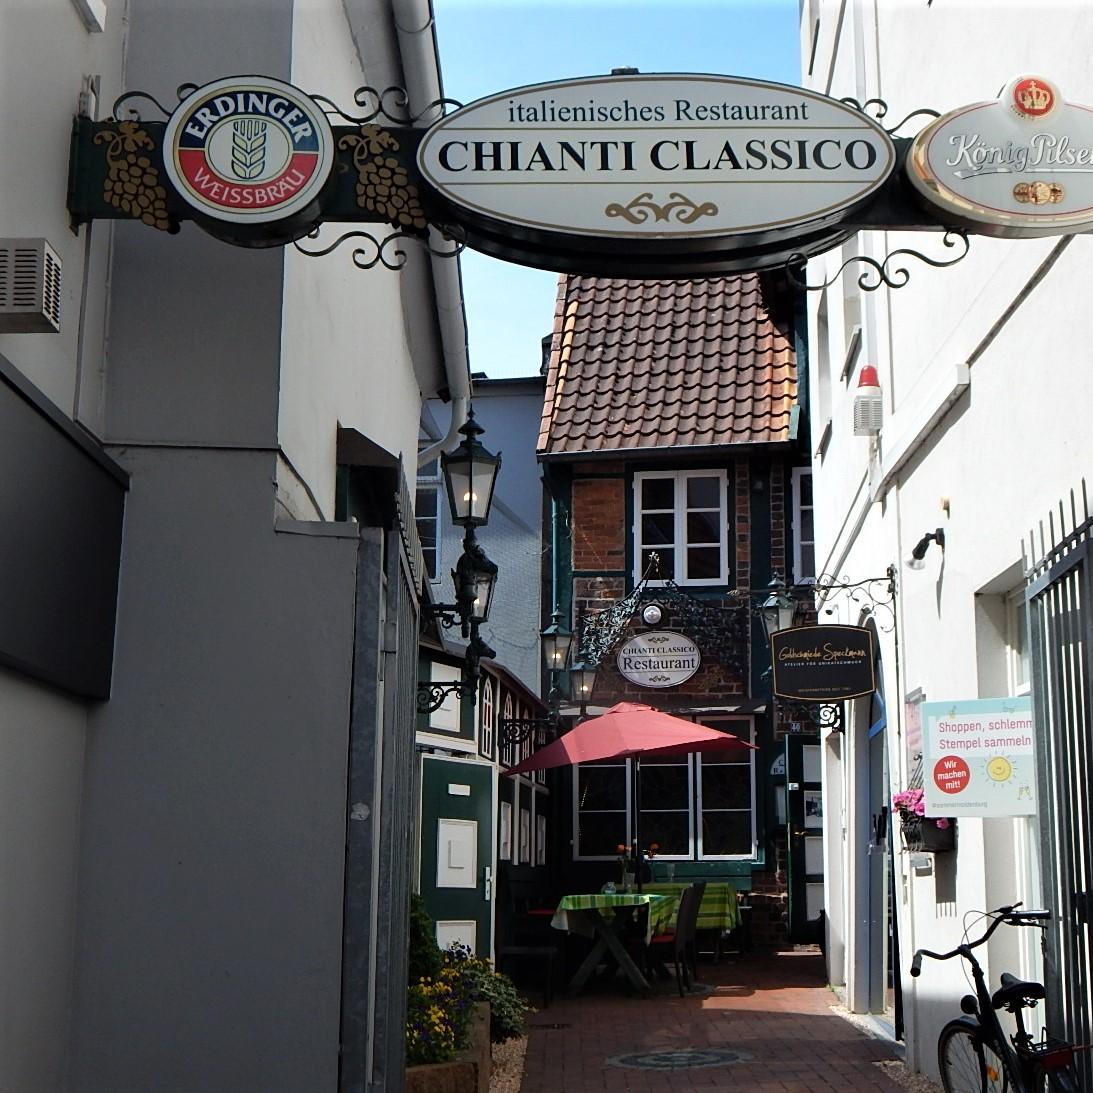 Restaurant "Chianti Classico" in  Oldenburg